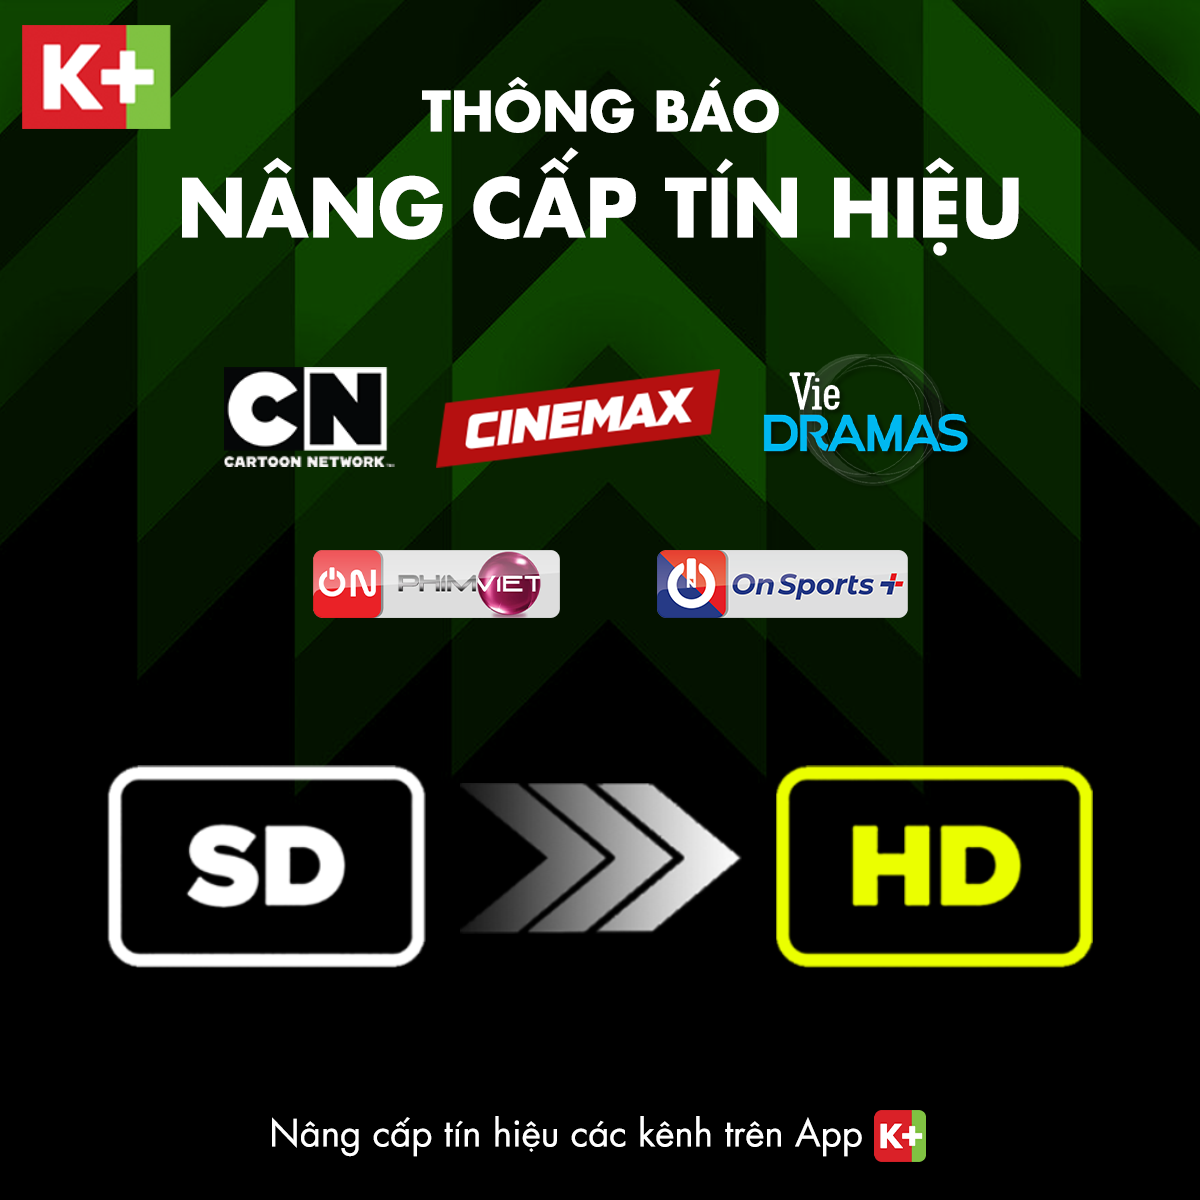 K+ Nâng cấp tín hiệu HD với 5 kênh truyền hình hấp dẫn